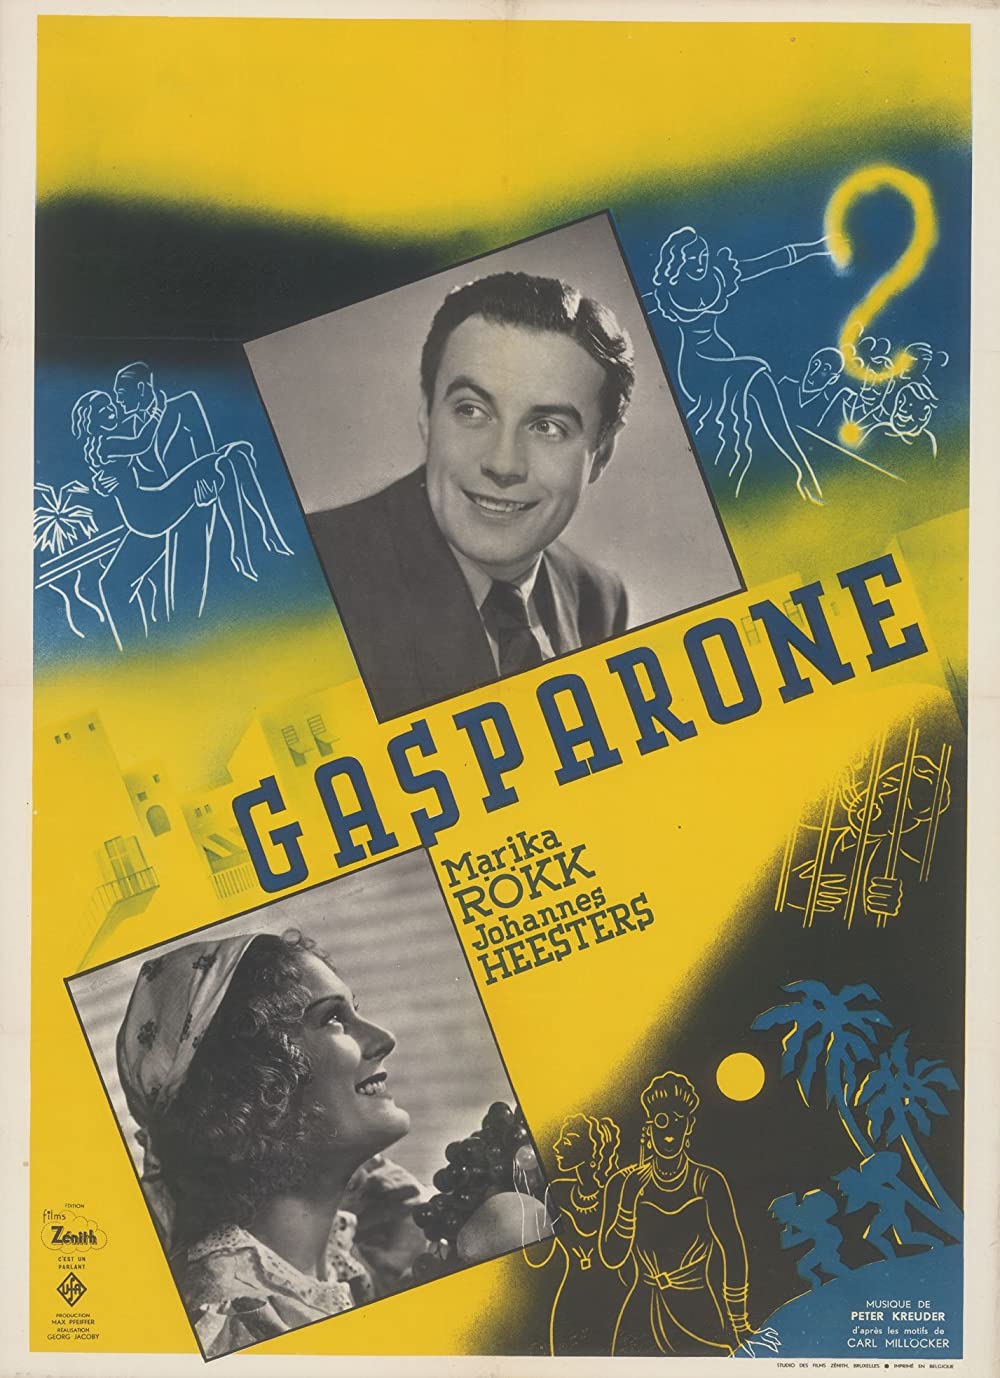 Filmbeschreibung zu Gasparone